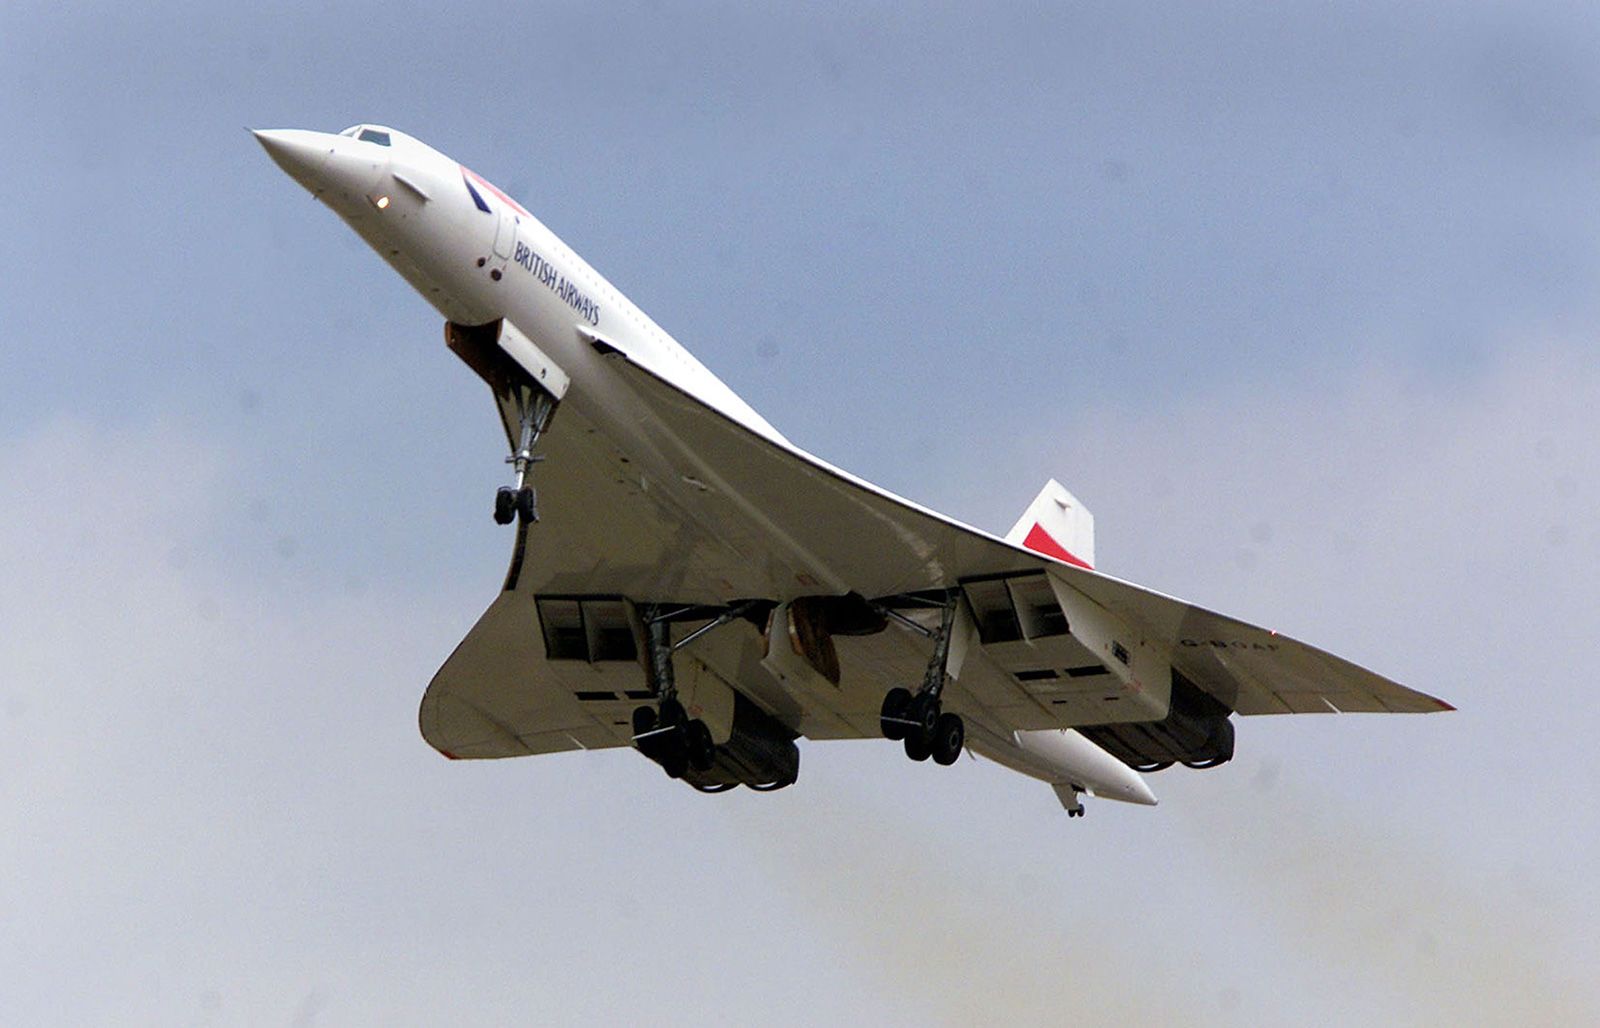 Concorde - Air France/British Airways (mini)